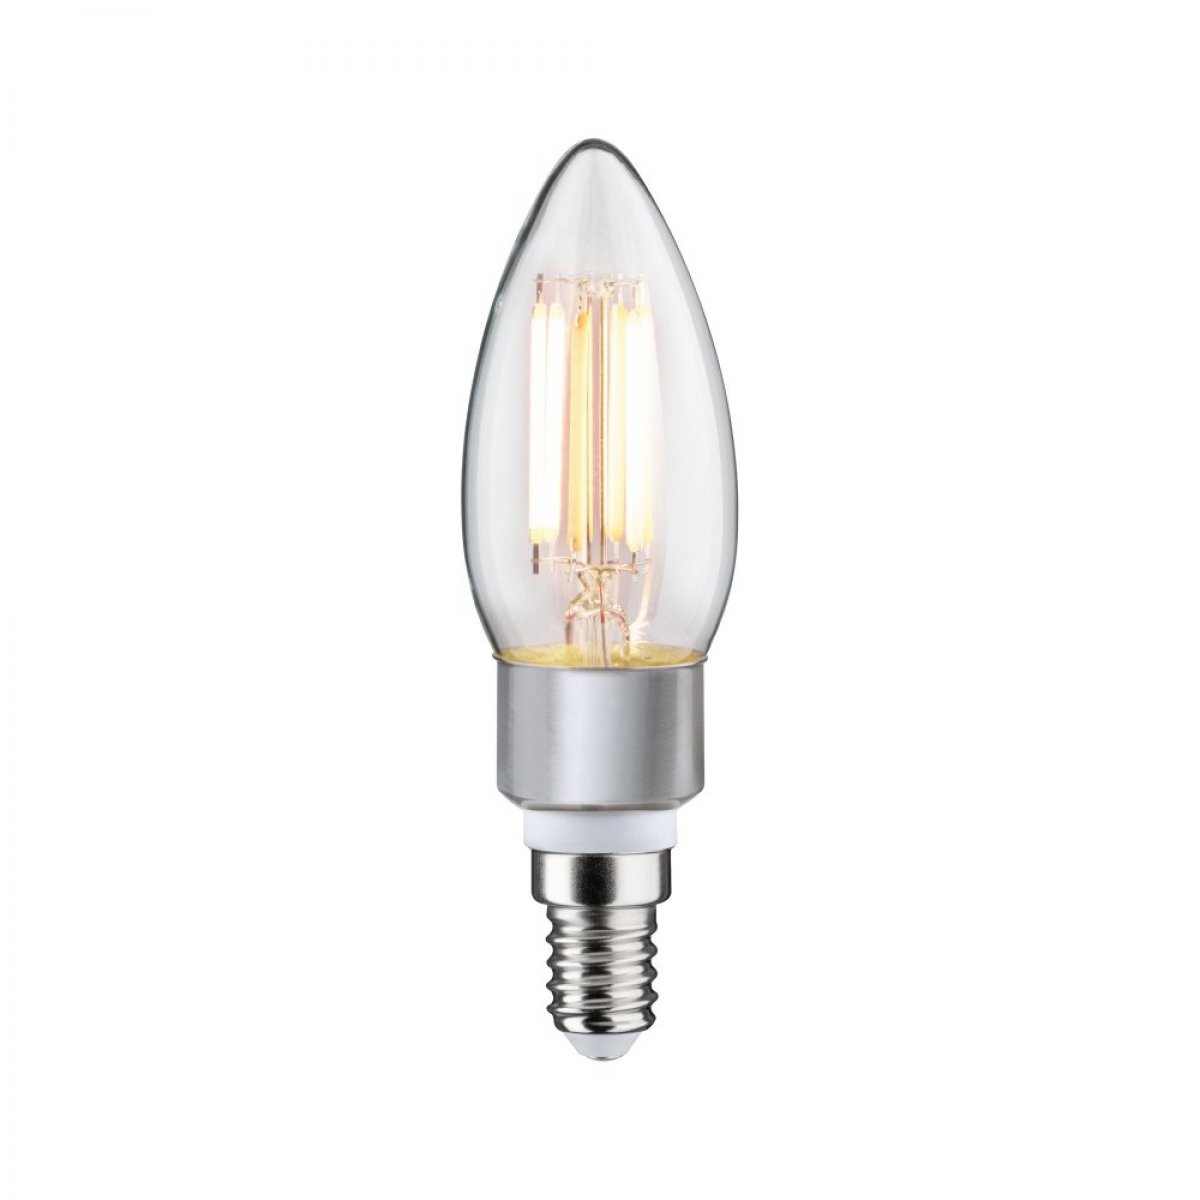 5 Goldlicht/Warmweiß LED LICHT Watt Kerze 470 PAULMANN lm Leuchtmittel Fil E14